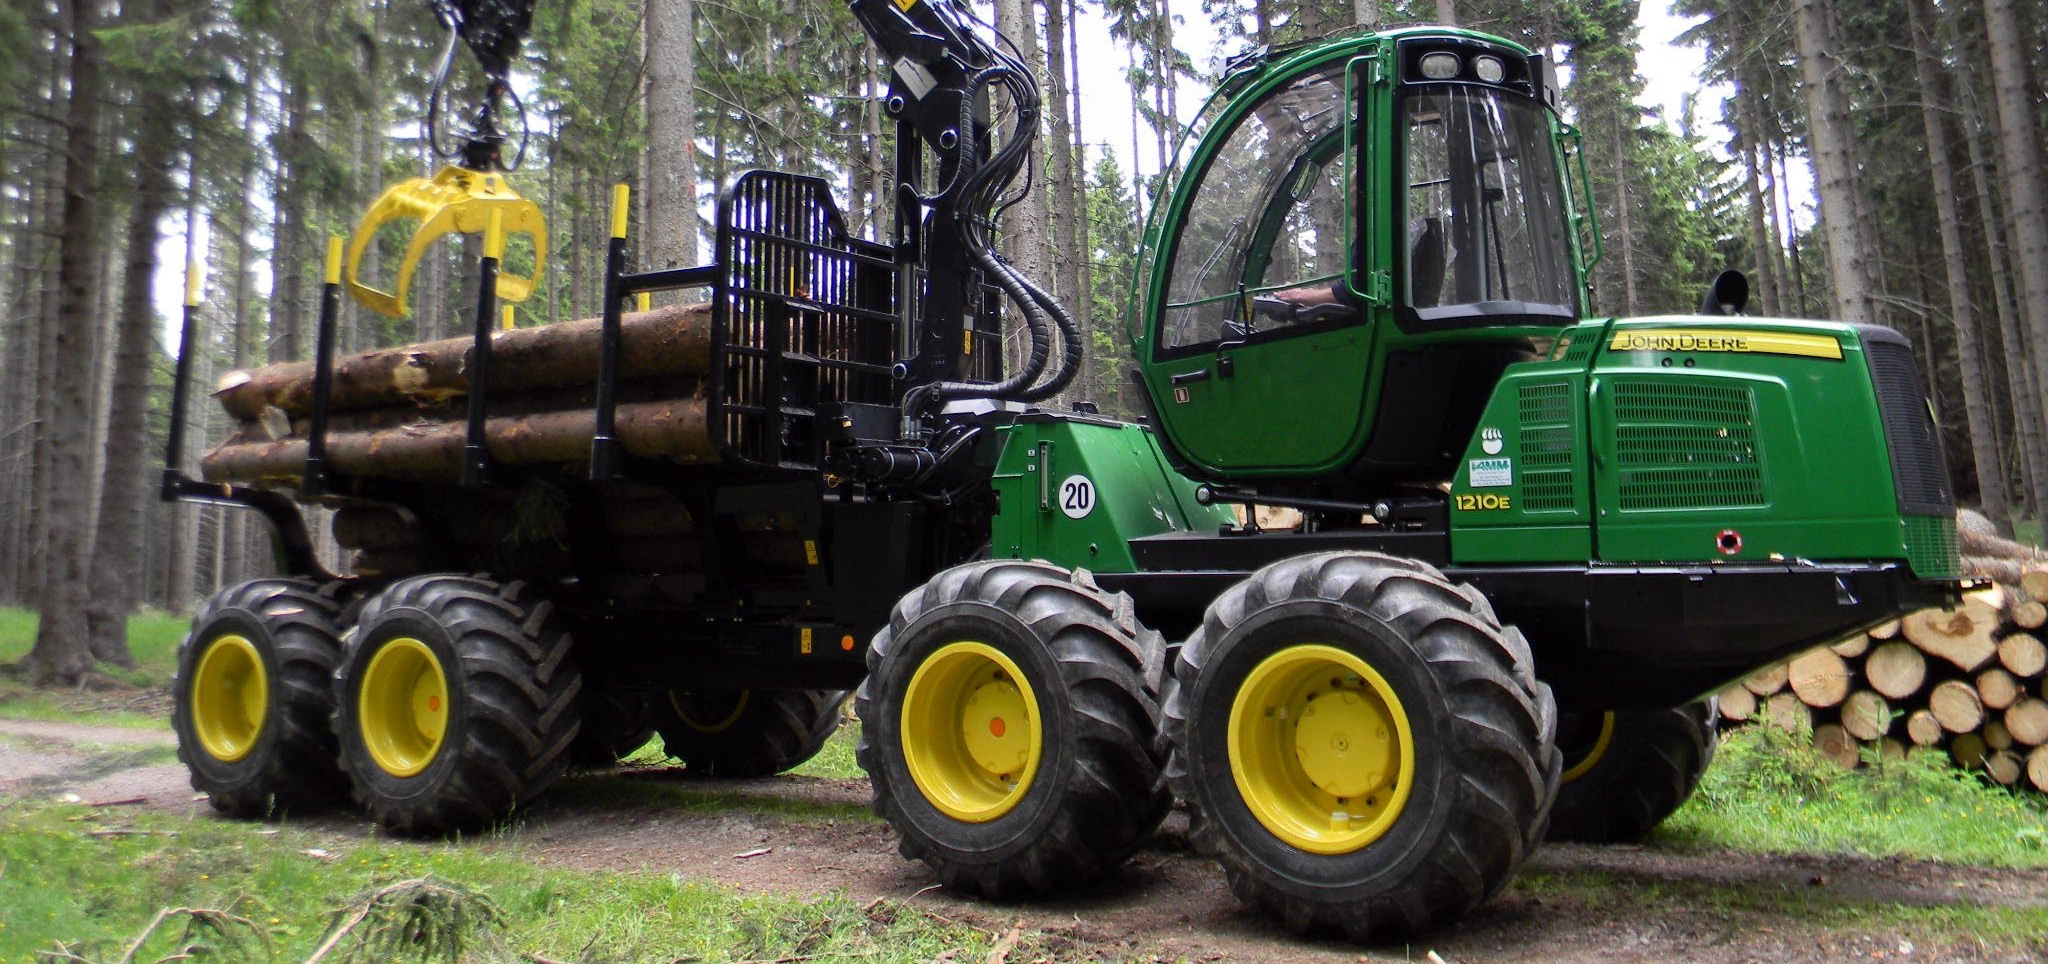 Трелевочные машины: незаменимое оборудование для лесозаготовительной промышленности